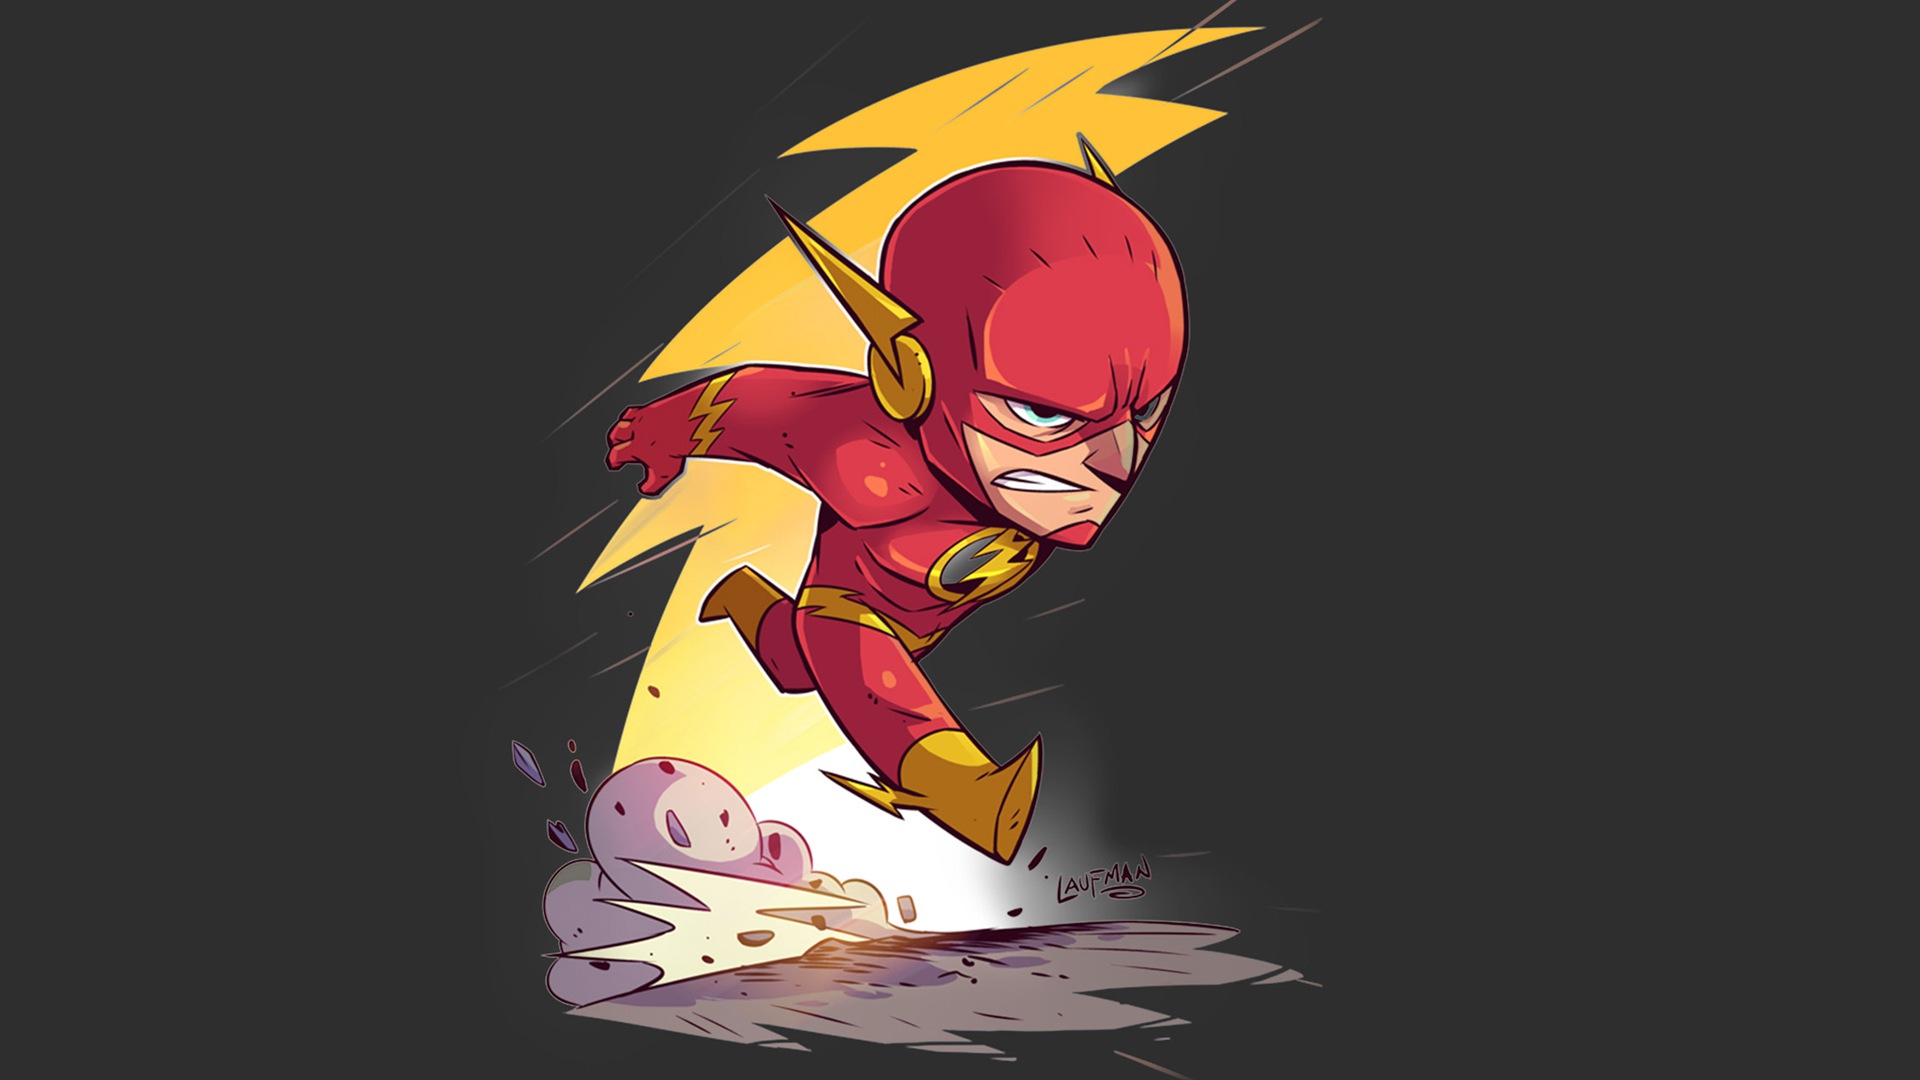 Flash, Chibi, Thunder, The Flash, DC Comics Wallpaper